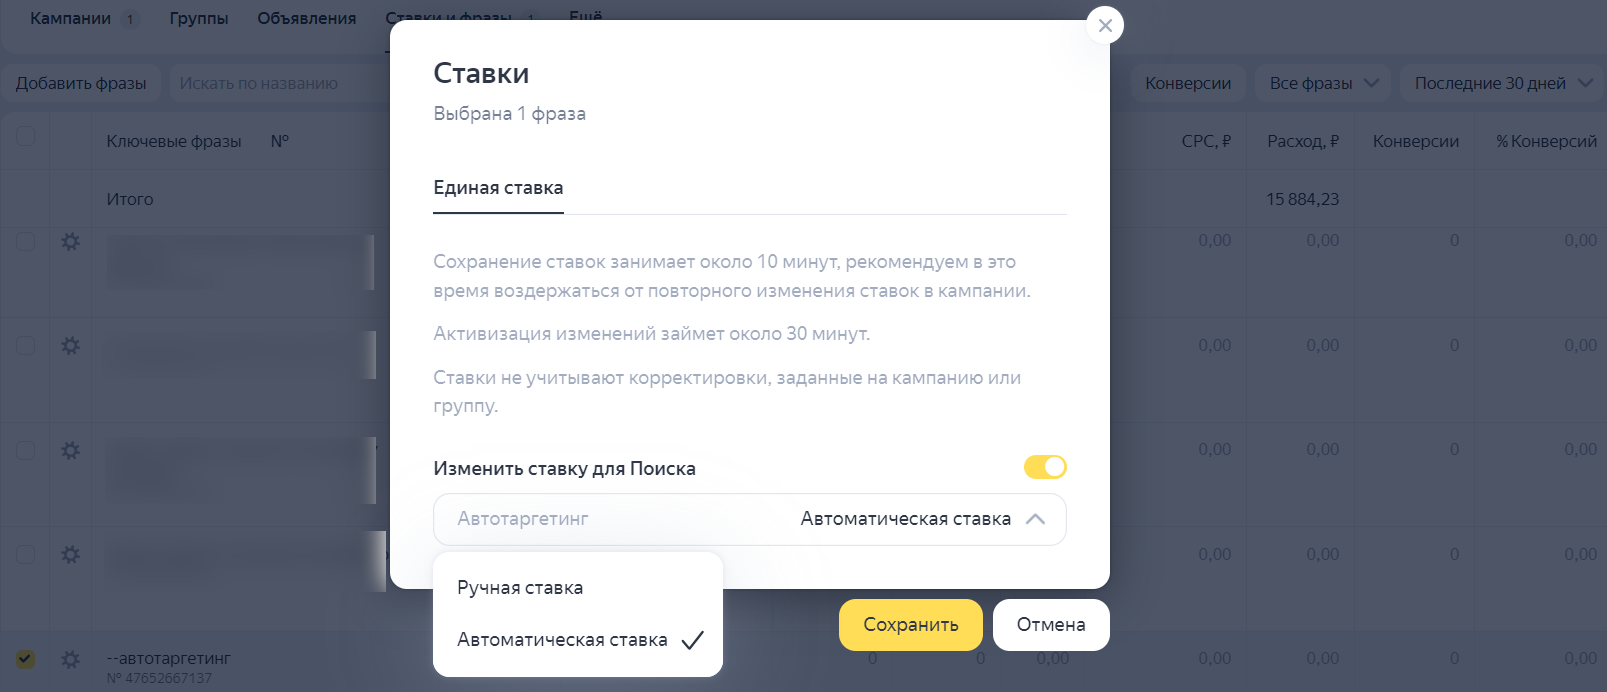 В компании с ручным управлением ставками Яндекс добавил автоматическую ставку 